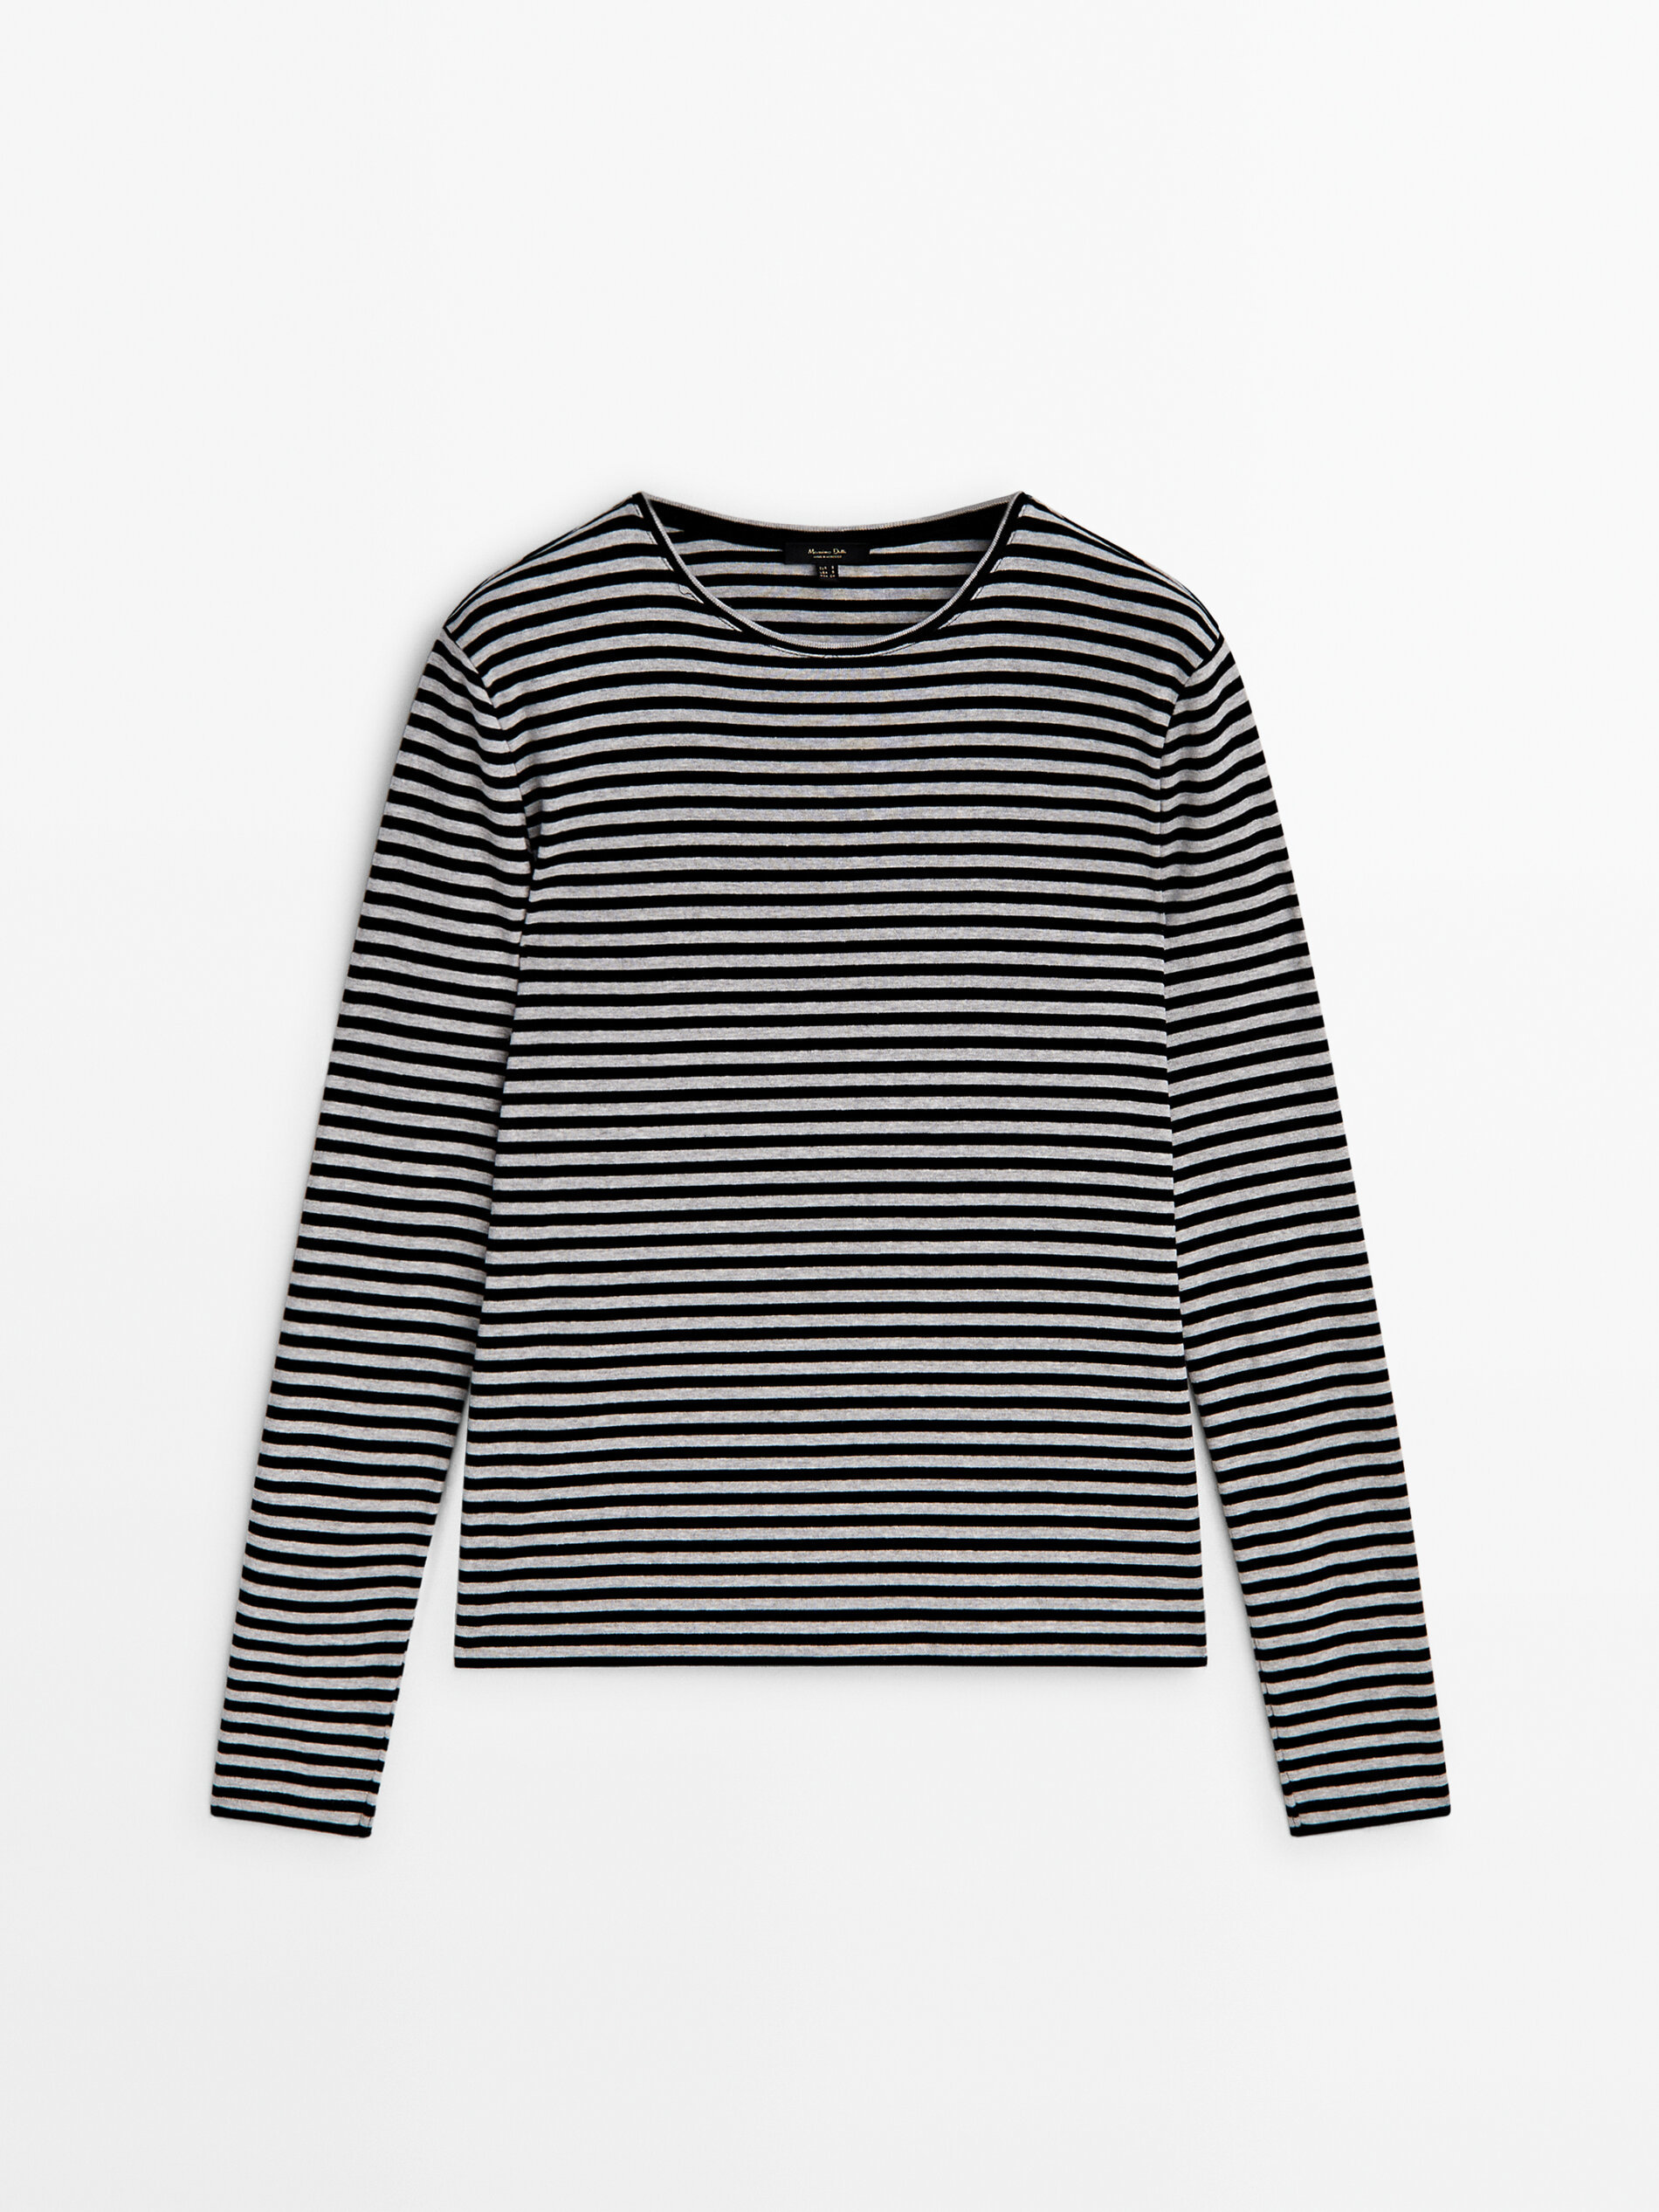 Ponte una camiseta de rayas marineras de manga larga con estilo, de la mano de Massimo Dutti